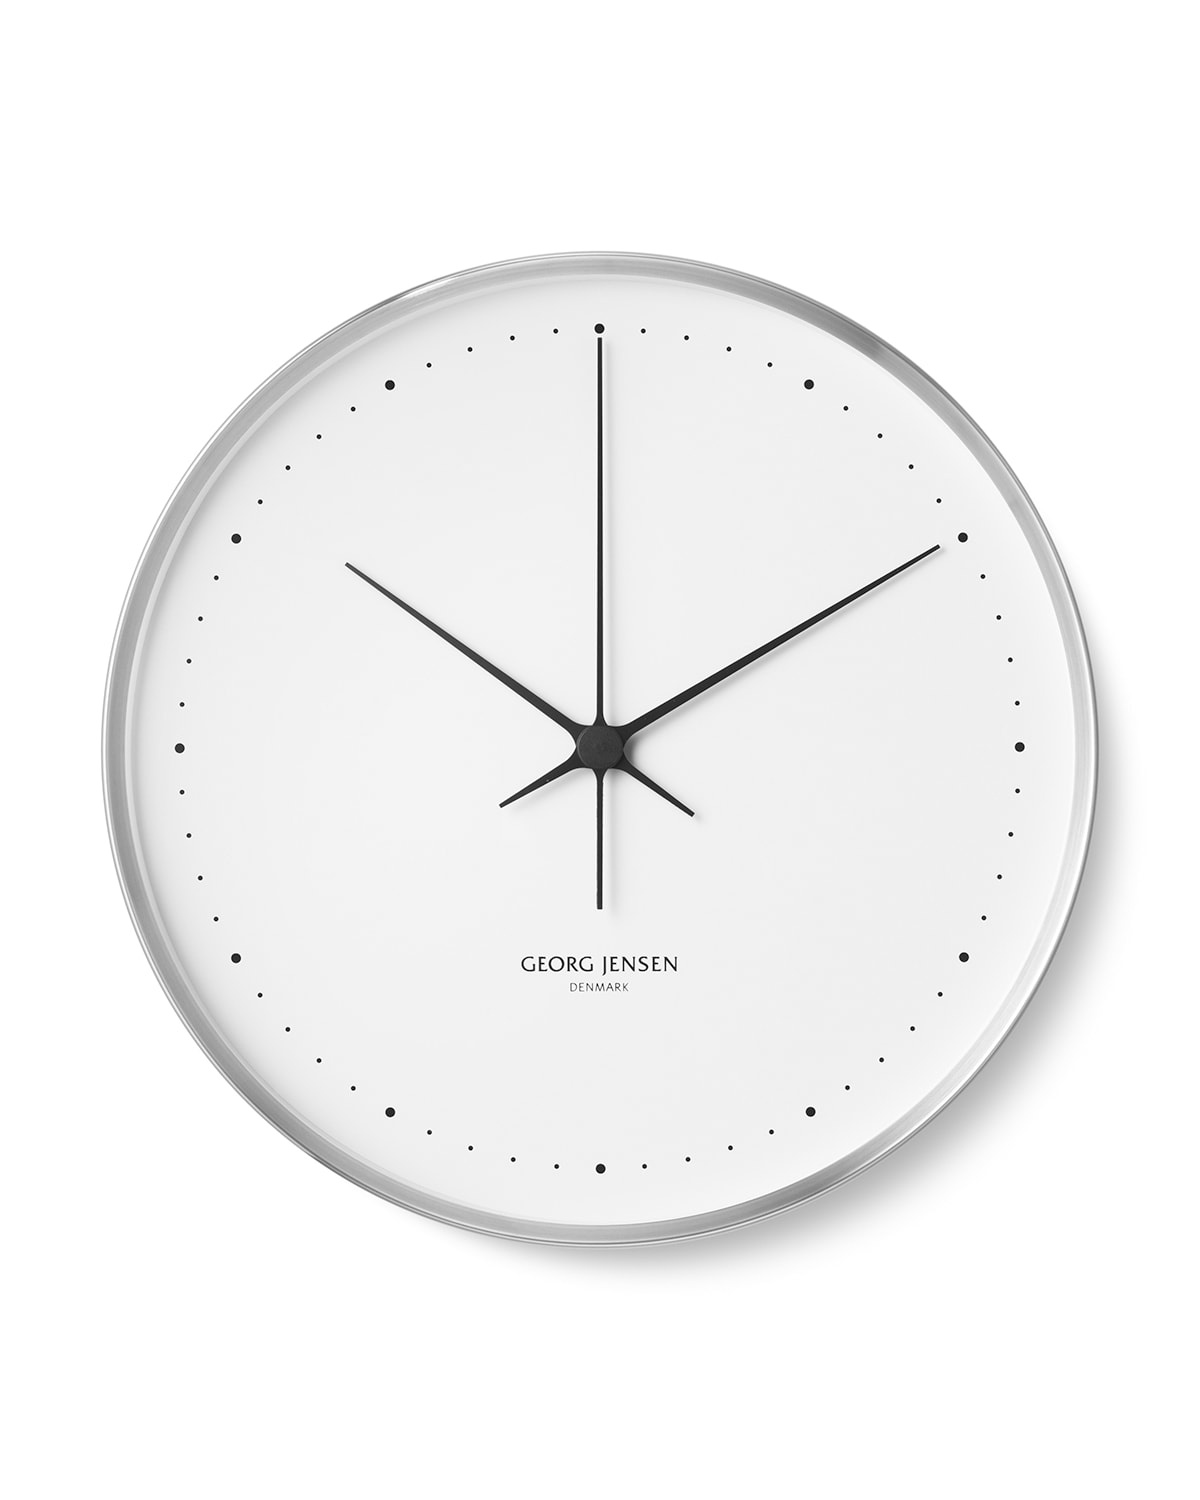 Henning Koppel Clock, 16.8"